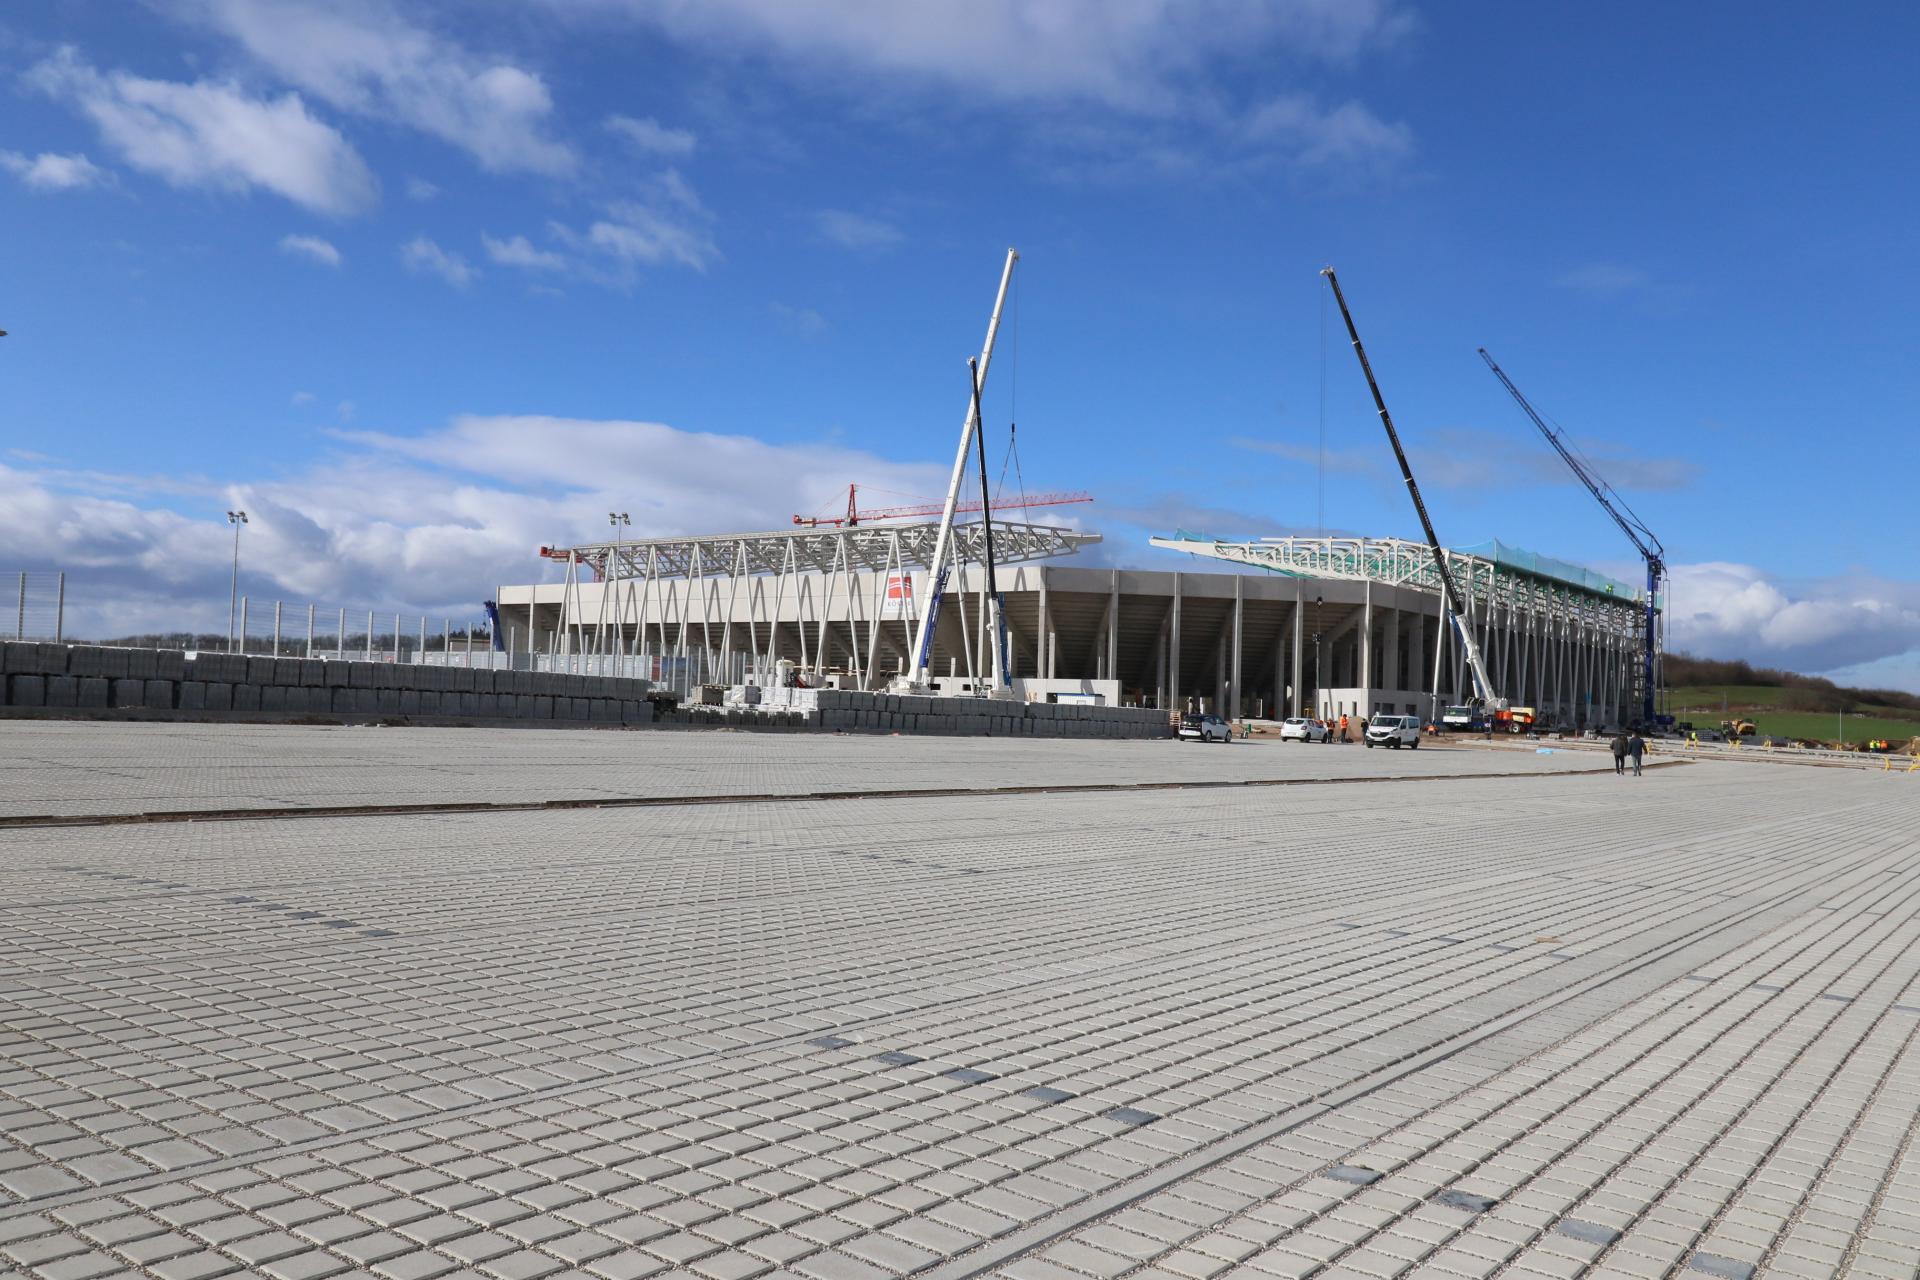 Bild: Das neue Stadion von Fußball-Bundesligist SC Freiburg wächst und gedeiht. Bis zum 1. Spieltag der neuen Saison 2020/21 soll die Arena spielbereit sein - Fotos: Joachim Hahne / johapress